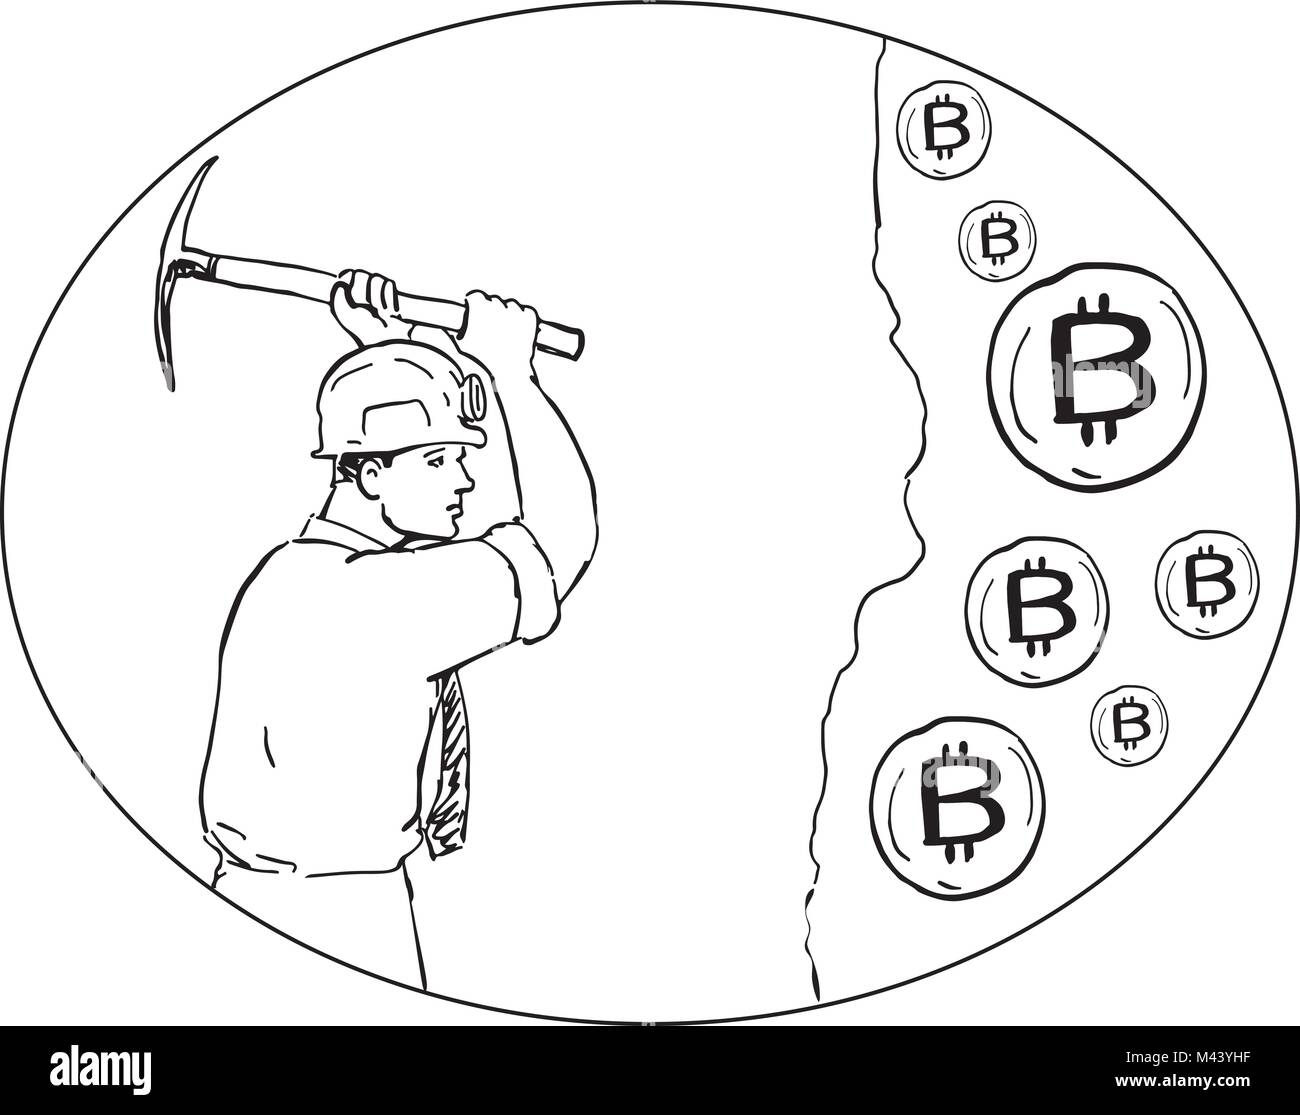 Zeichnung Skizze stil Abbildung: Bitcoin Miner Bergbau hacking mit Spitzhacke Graben für Cryptocurrency set innen Oval auf isolierten Hintergrund. Stock Vektor